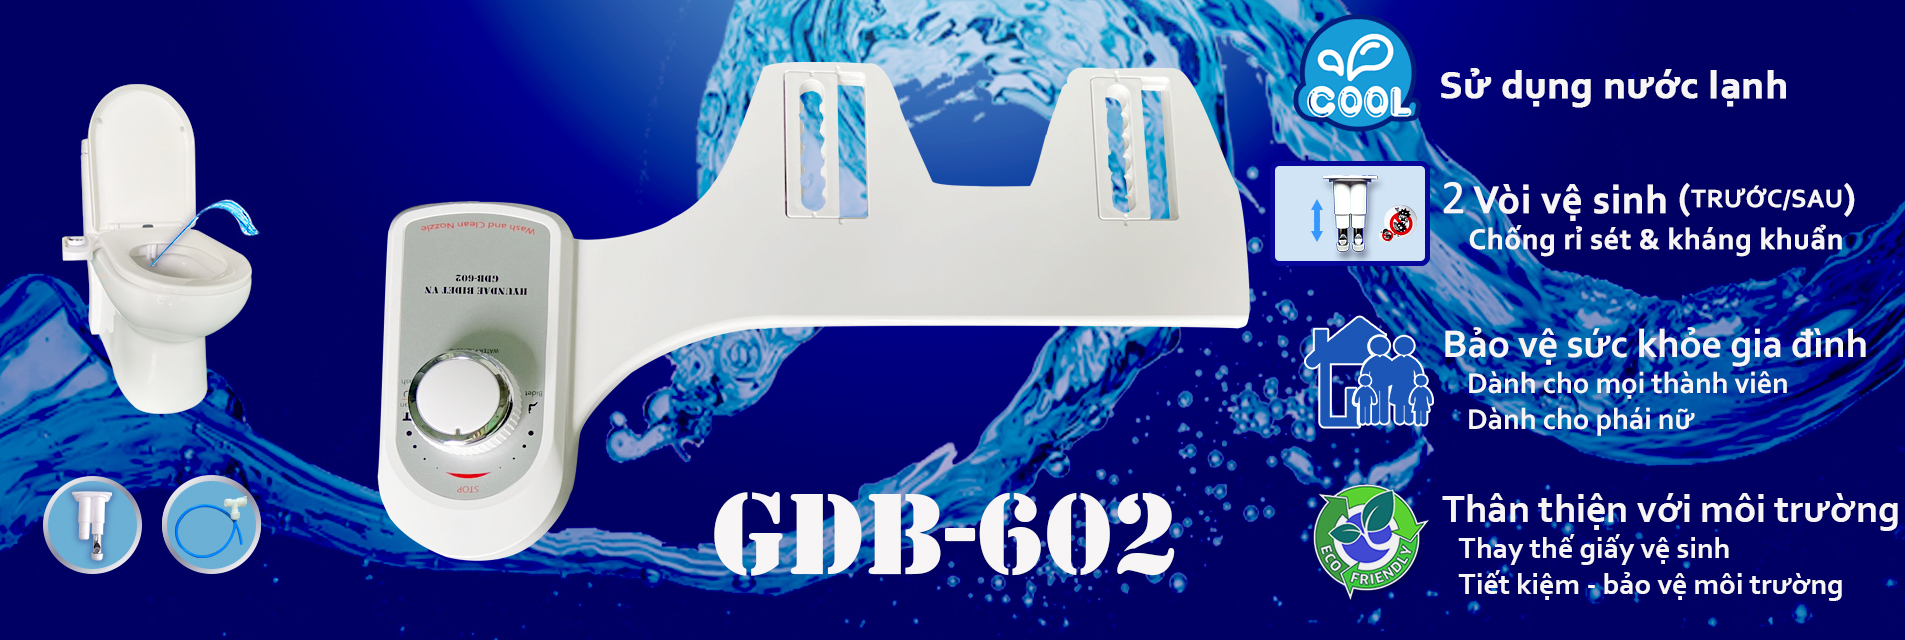 GDB-600 Thiết bị vệ sinh nhà tắm cho gia đình và phái đẹp